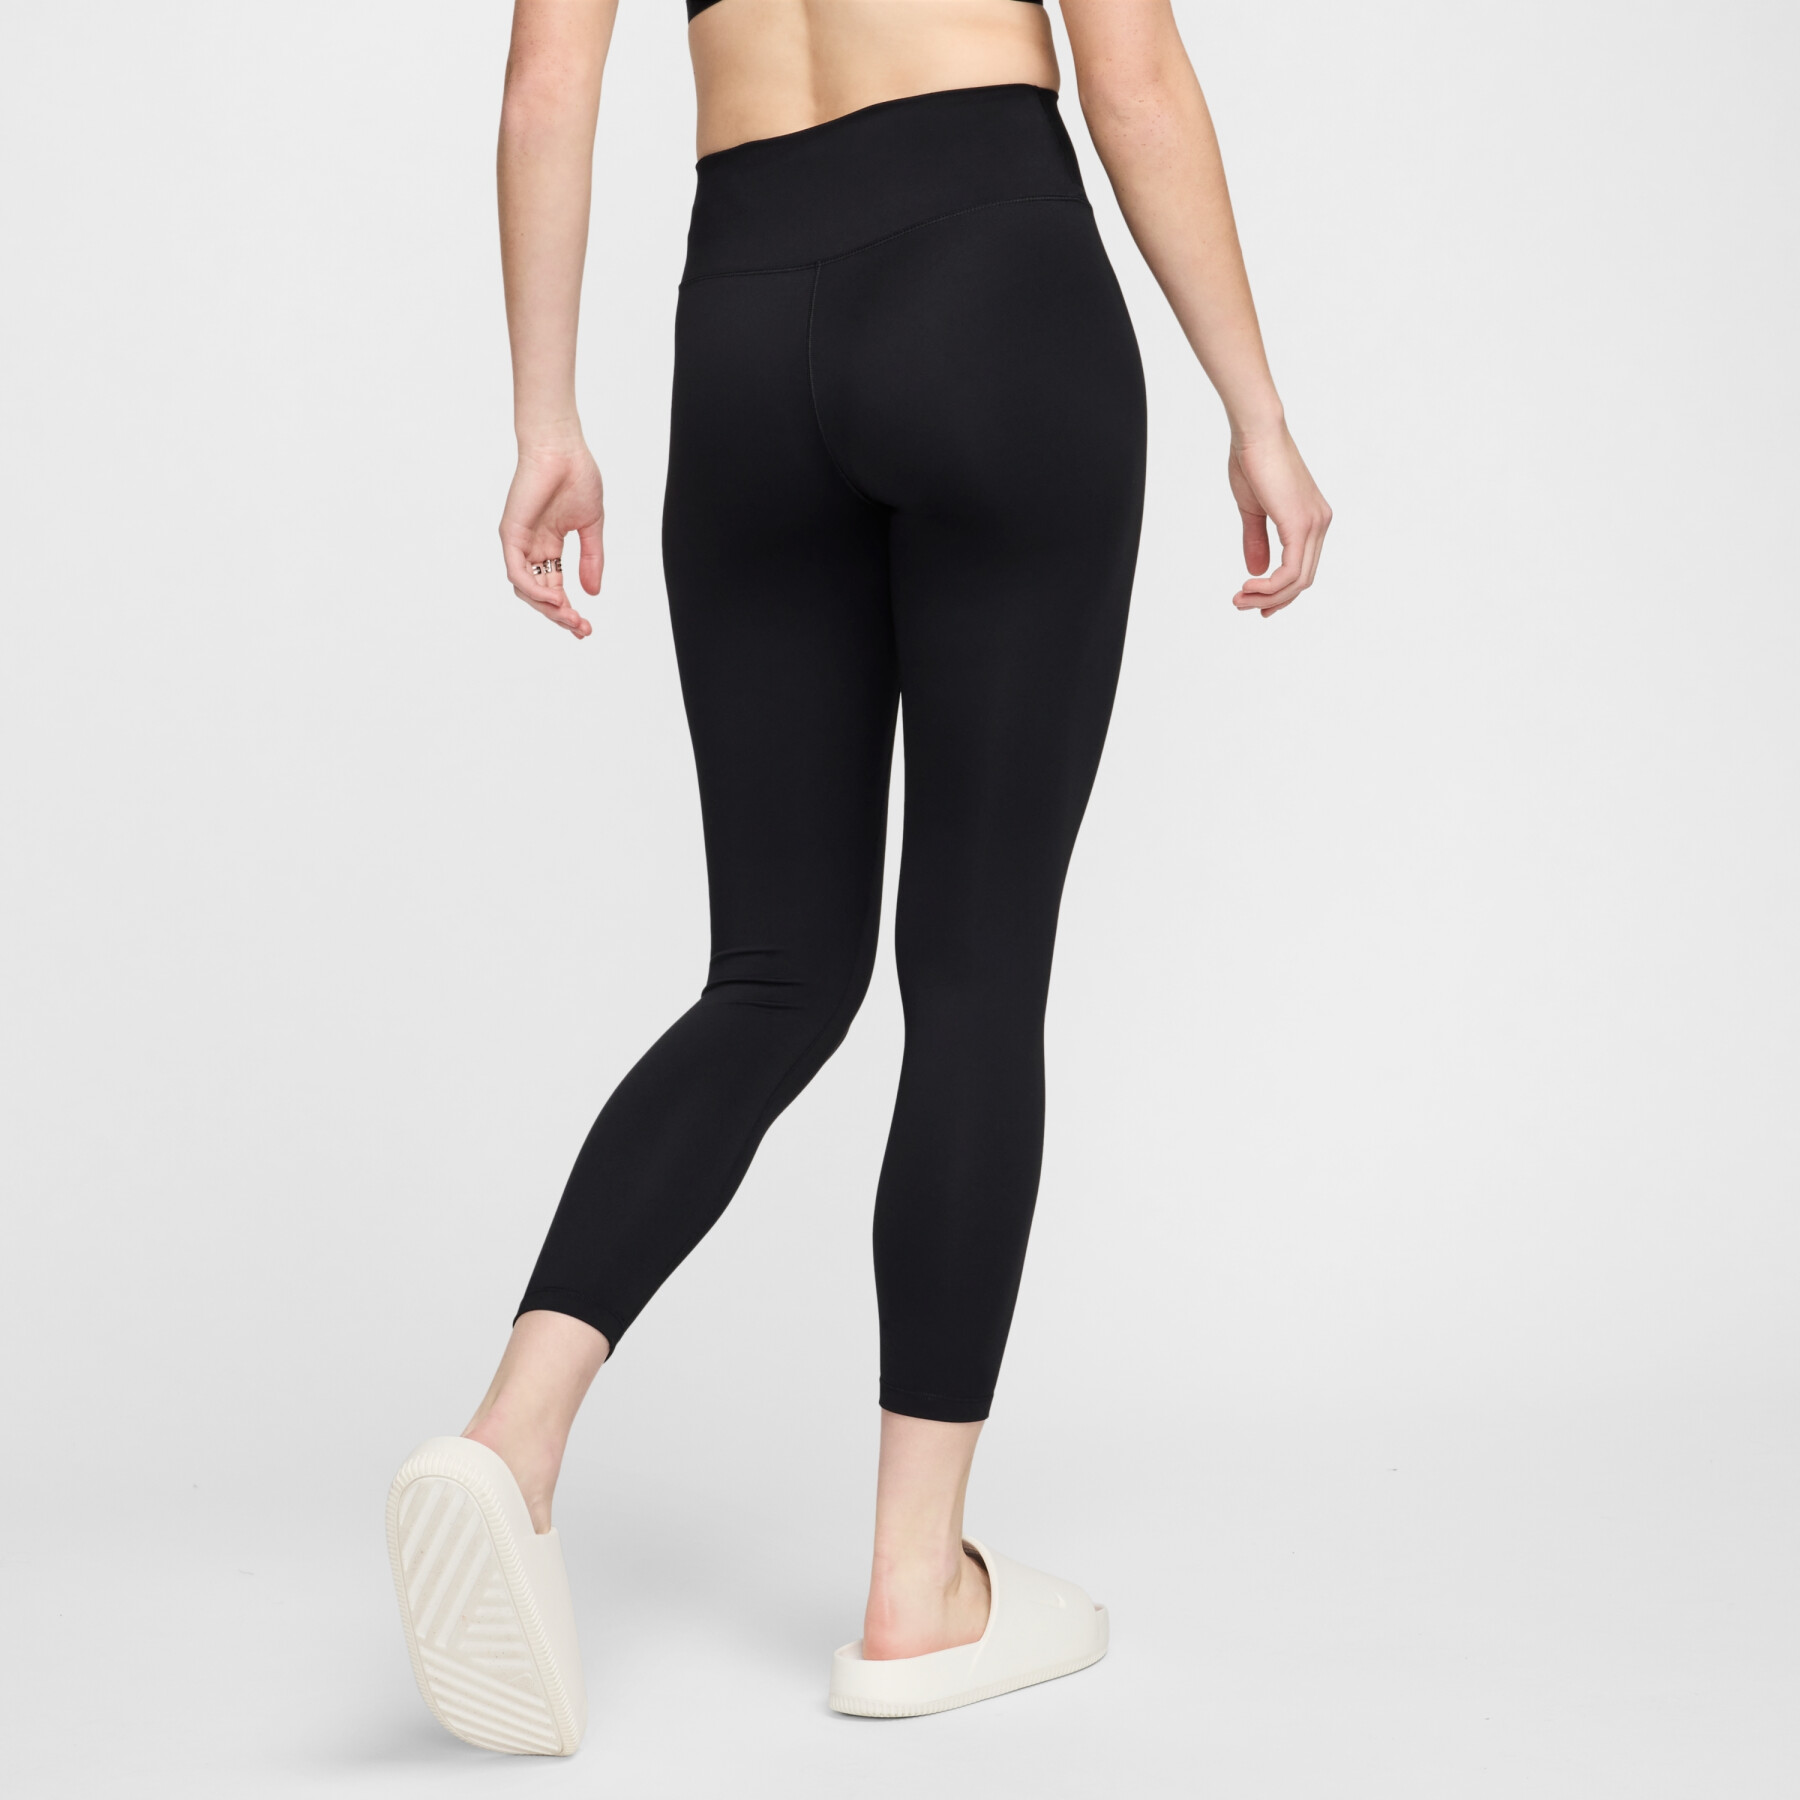 Legging 7/8 para mujer Nike One